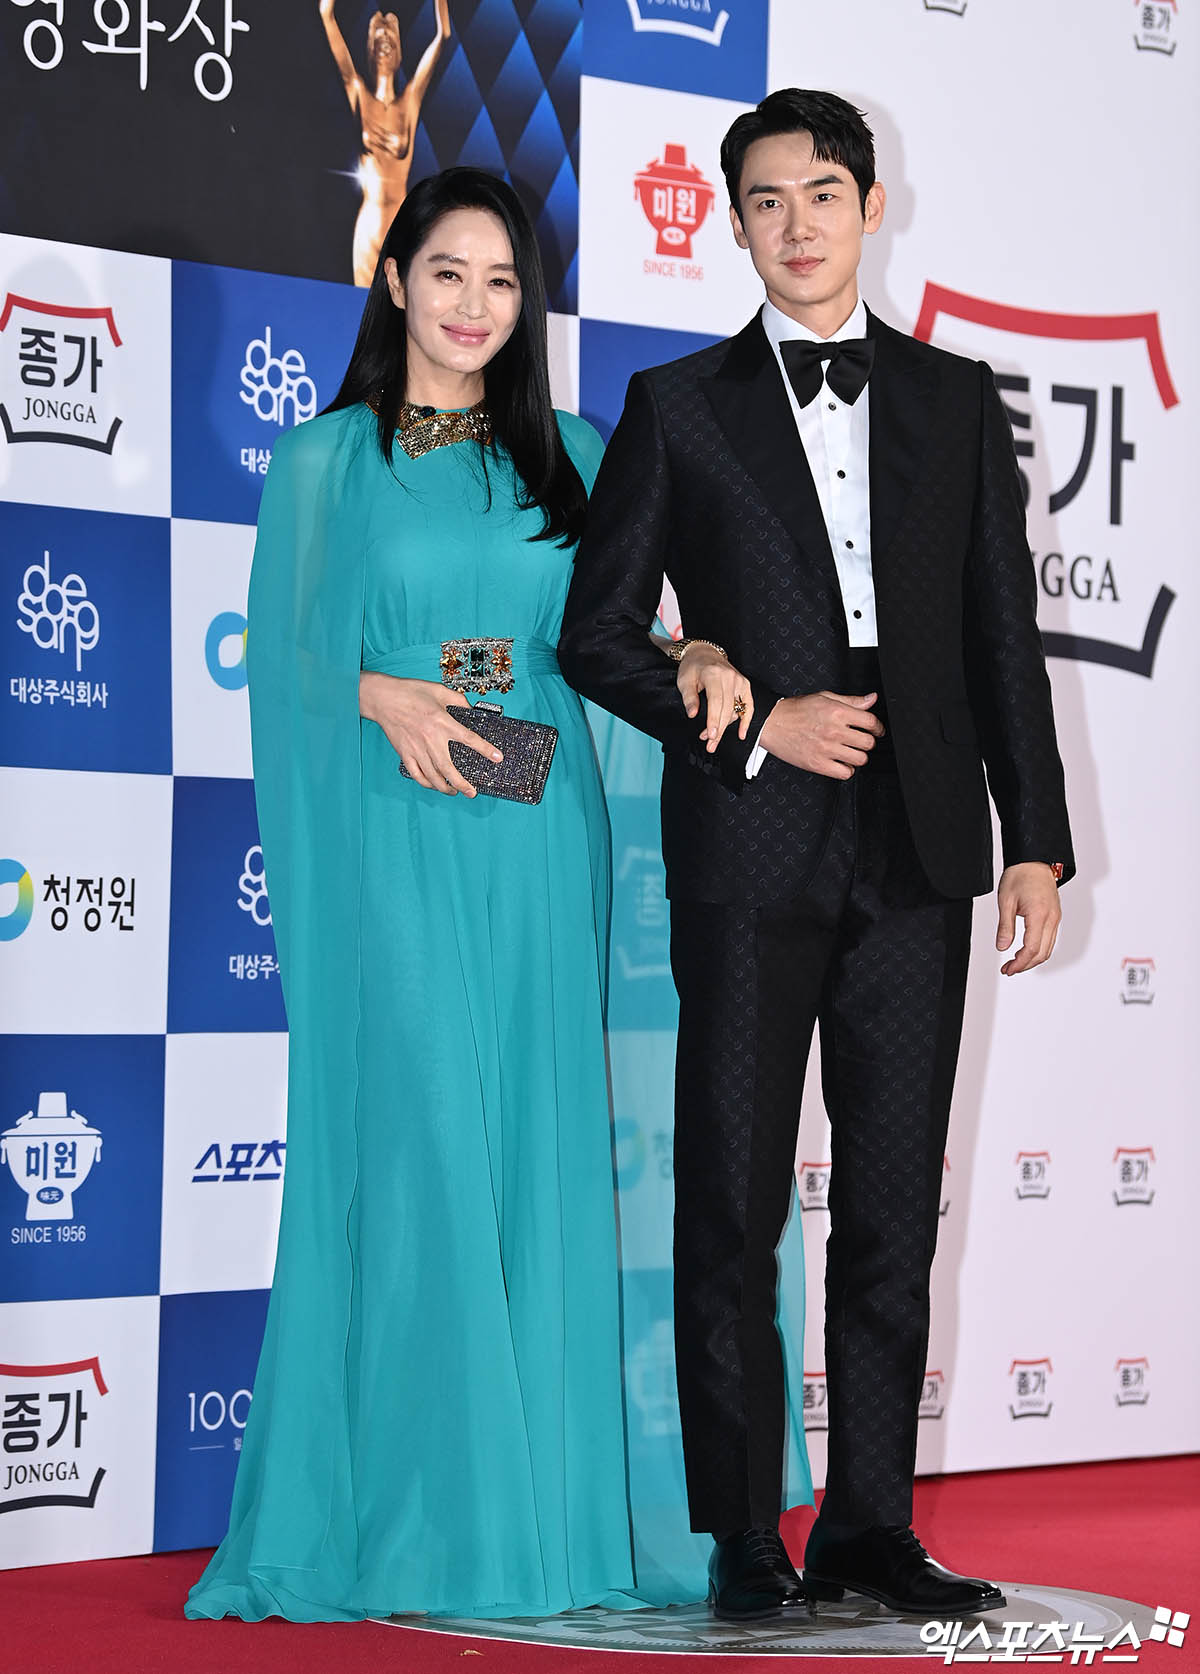 Vẫn như thường lệ, “chị đại” Kim Hye Soo tiếp tục thu hút toàn bộ ống kính giới truyền thông trên thảm đỏ Giải thưởng Điện ảnh Rồng xanh 2022 vào tối qua, 25/11. Trong bộ cánh kín cổng cao tường, người đẹp sánh đôi cùng nam diễn viên Yoo Yeon Seok. Cả hai đảm nhận vai trò MC dẫn dắt lễ trao giải.